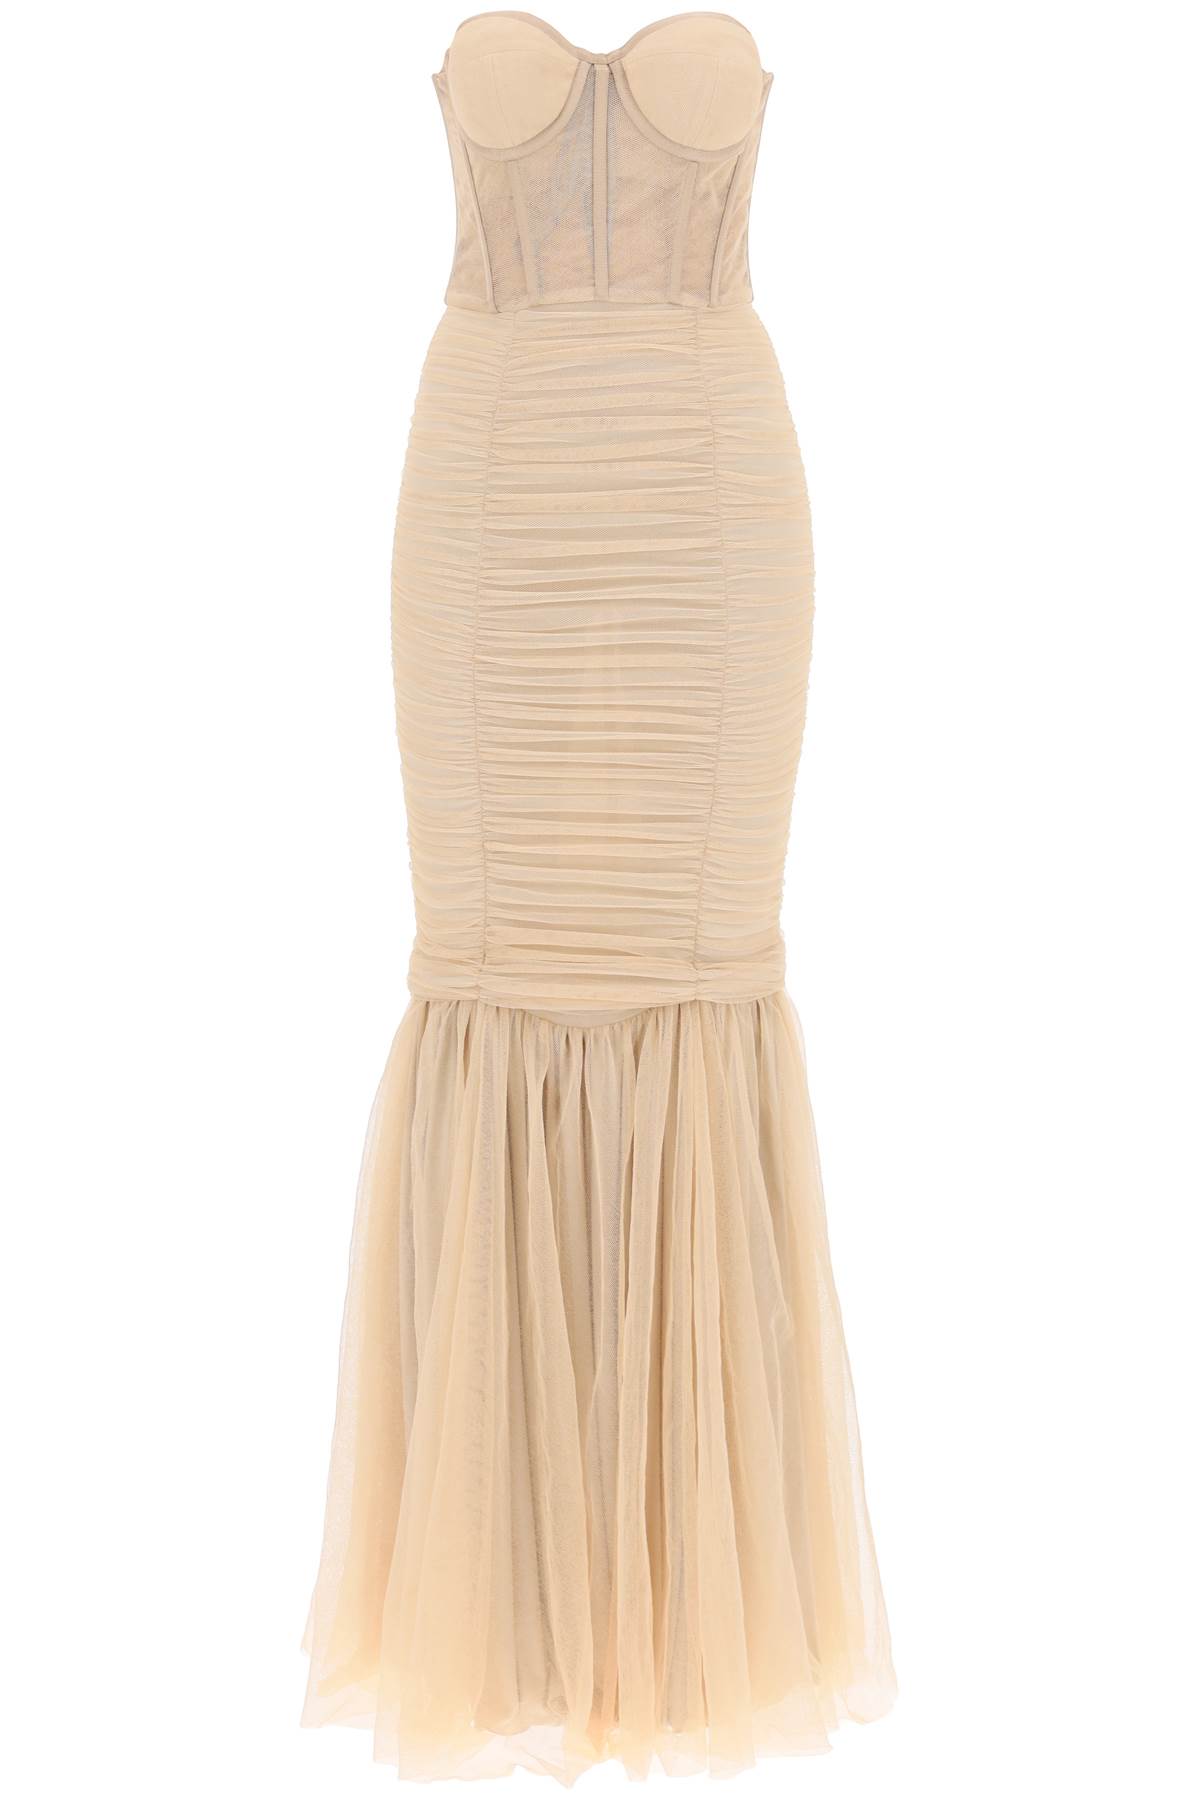 Shop 19:13 Dresscode Long Mermaid Dress In Nude (beige)